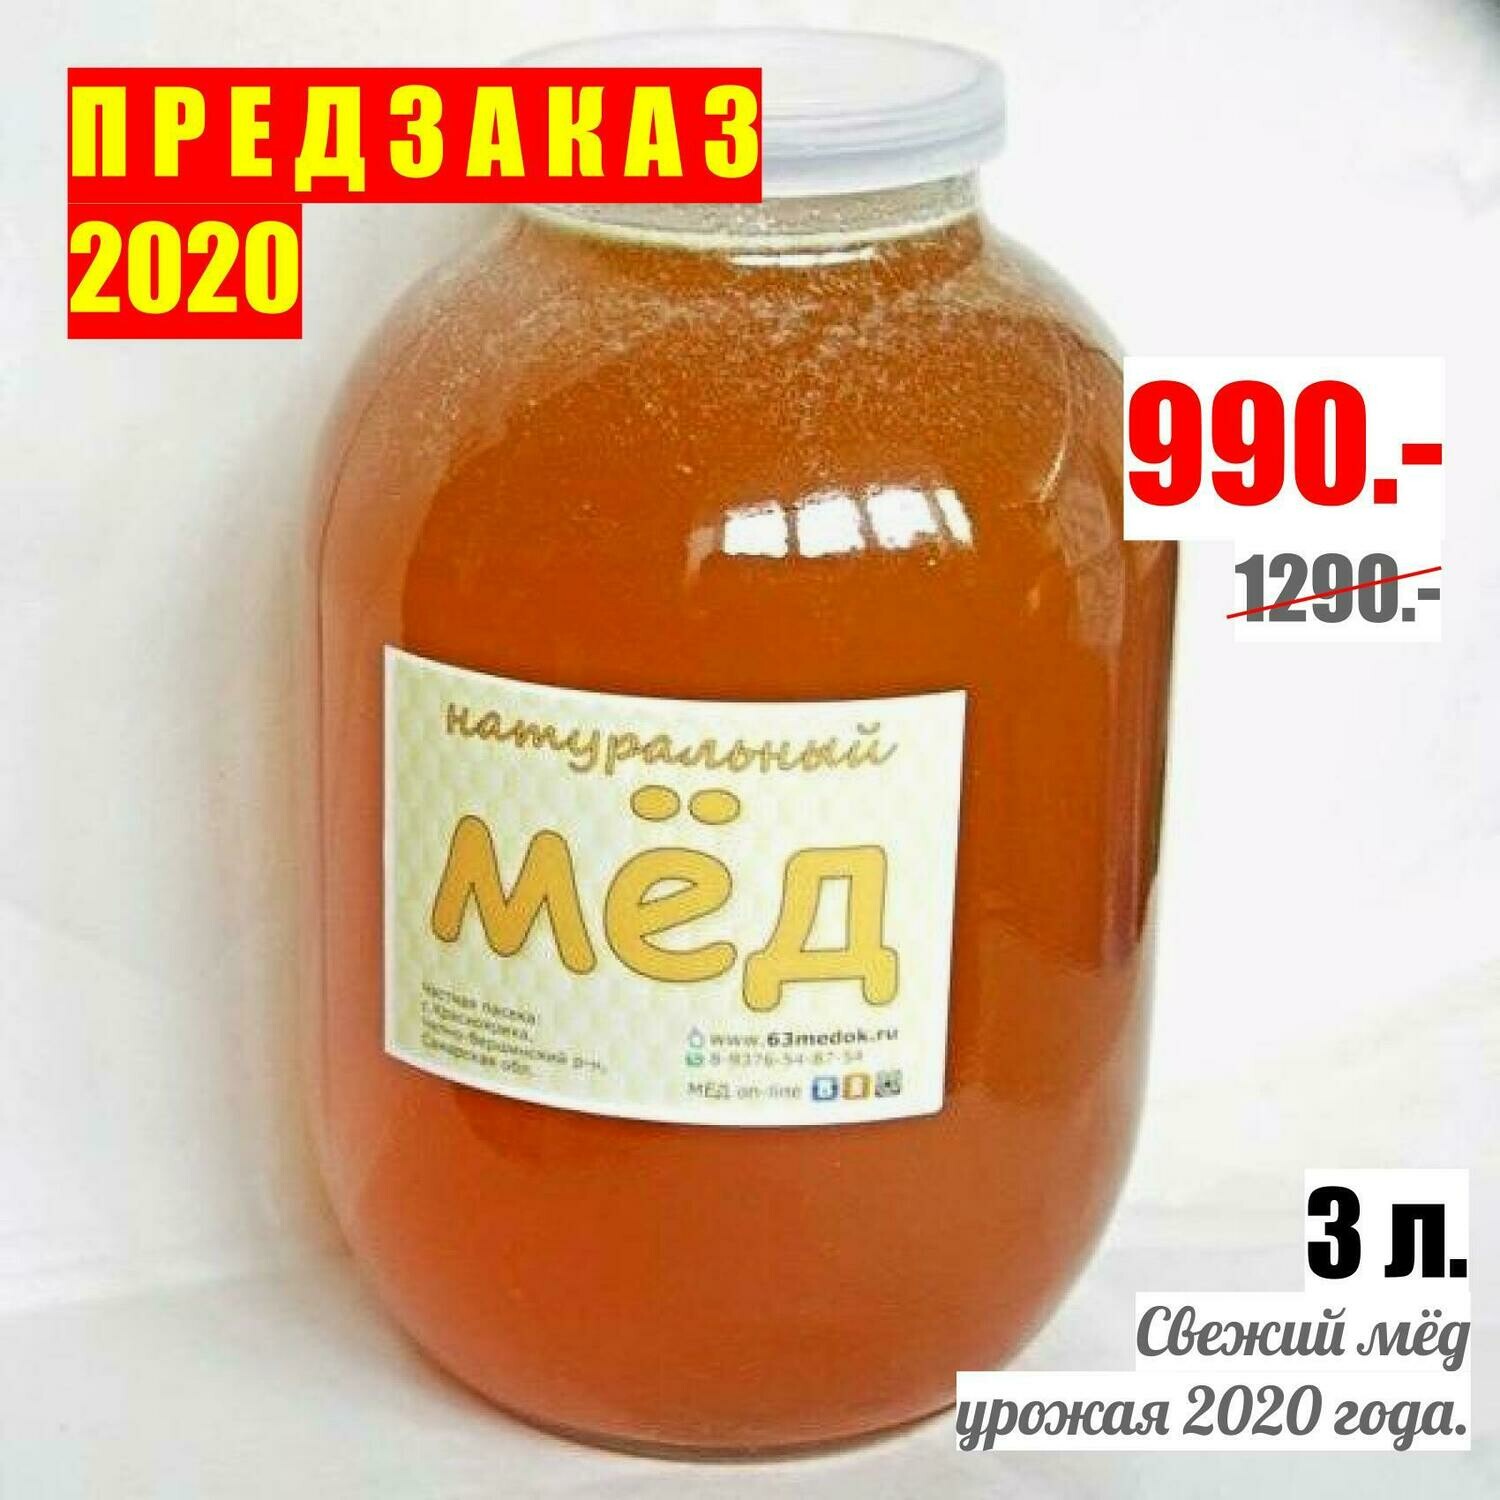 ПРЕДЗАКАЗ 2020 - 3л. свежего мёда